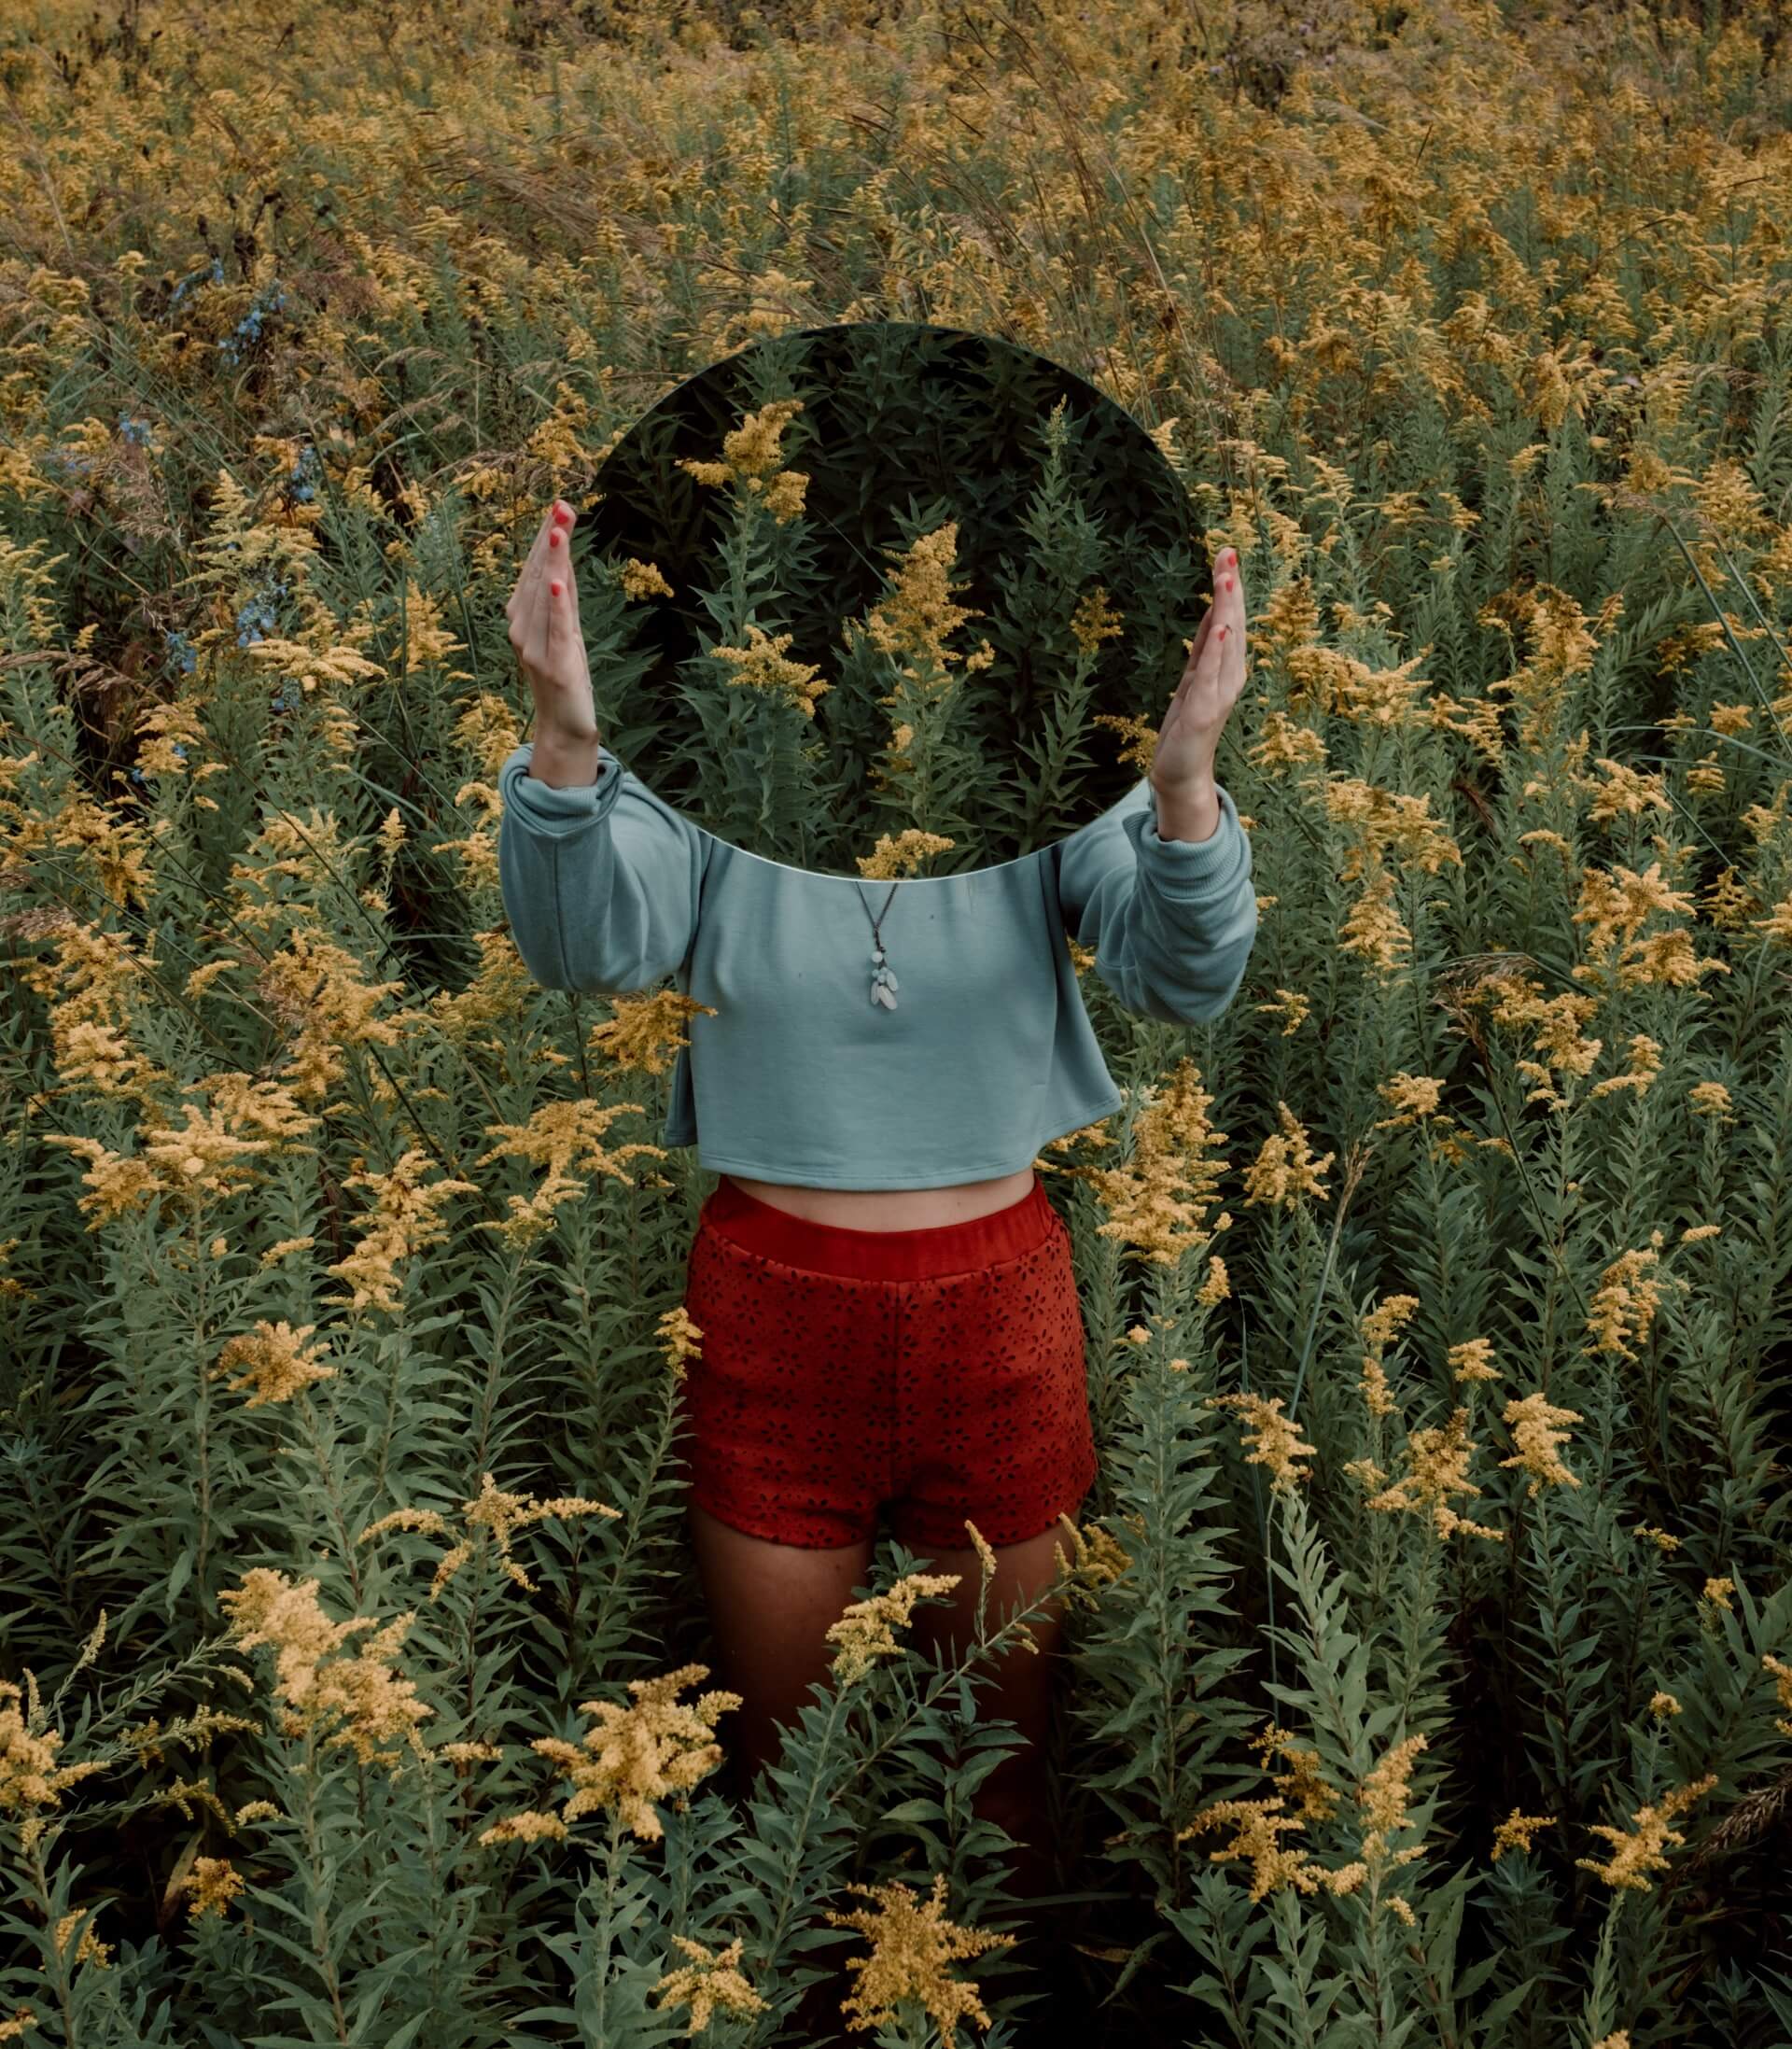 Kvinna i blomfält med en spegel.